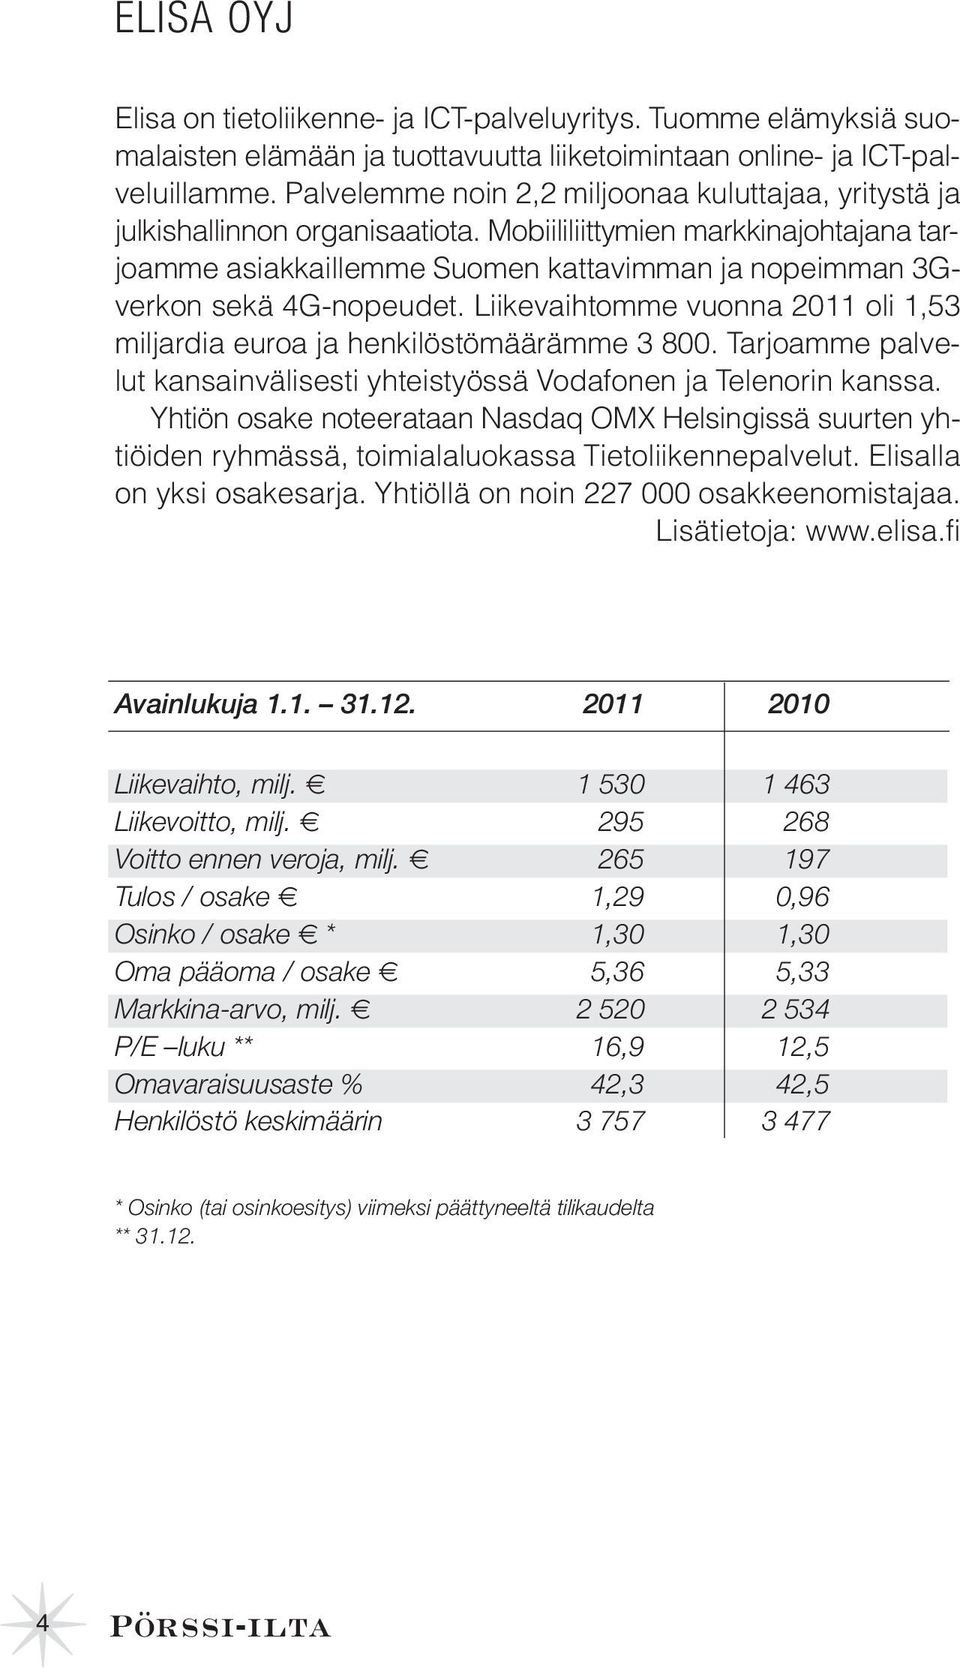 Mobiililiittymien markkinajohtajana tarjoamme asiakkaillemme Suomen kattavimman ja nopeimman 3Gverkon sekä 4G-nopeudet. Liikevaihtomme vuonna 2011 oli 1,53 miljardia euroa ja henkilöstömäärämme 3 800.